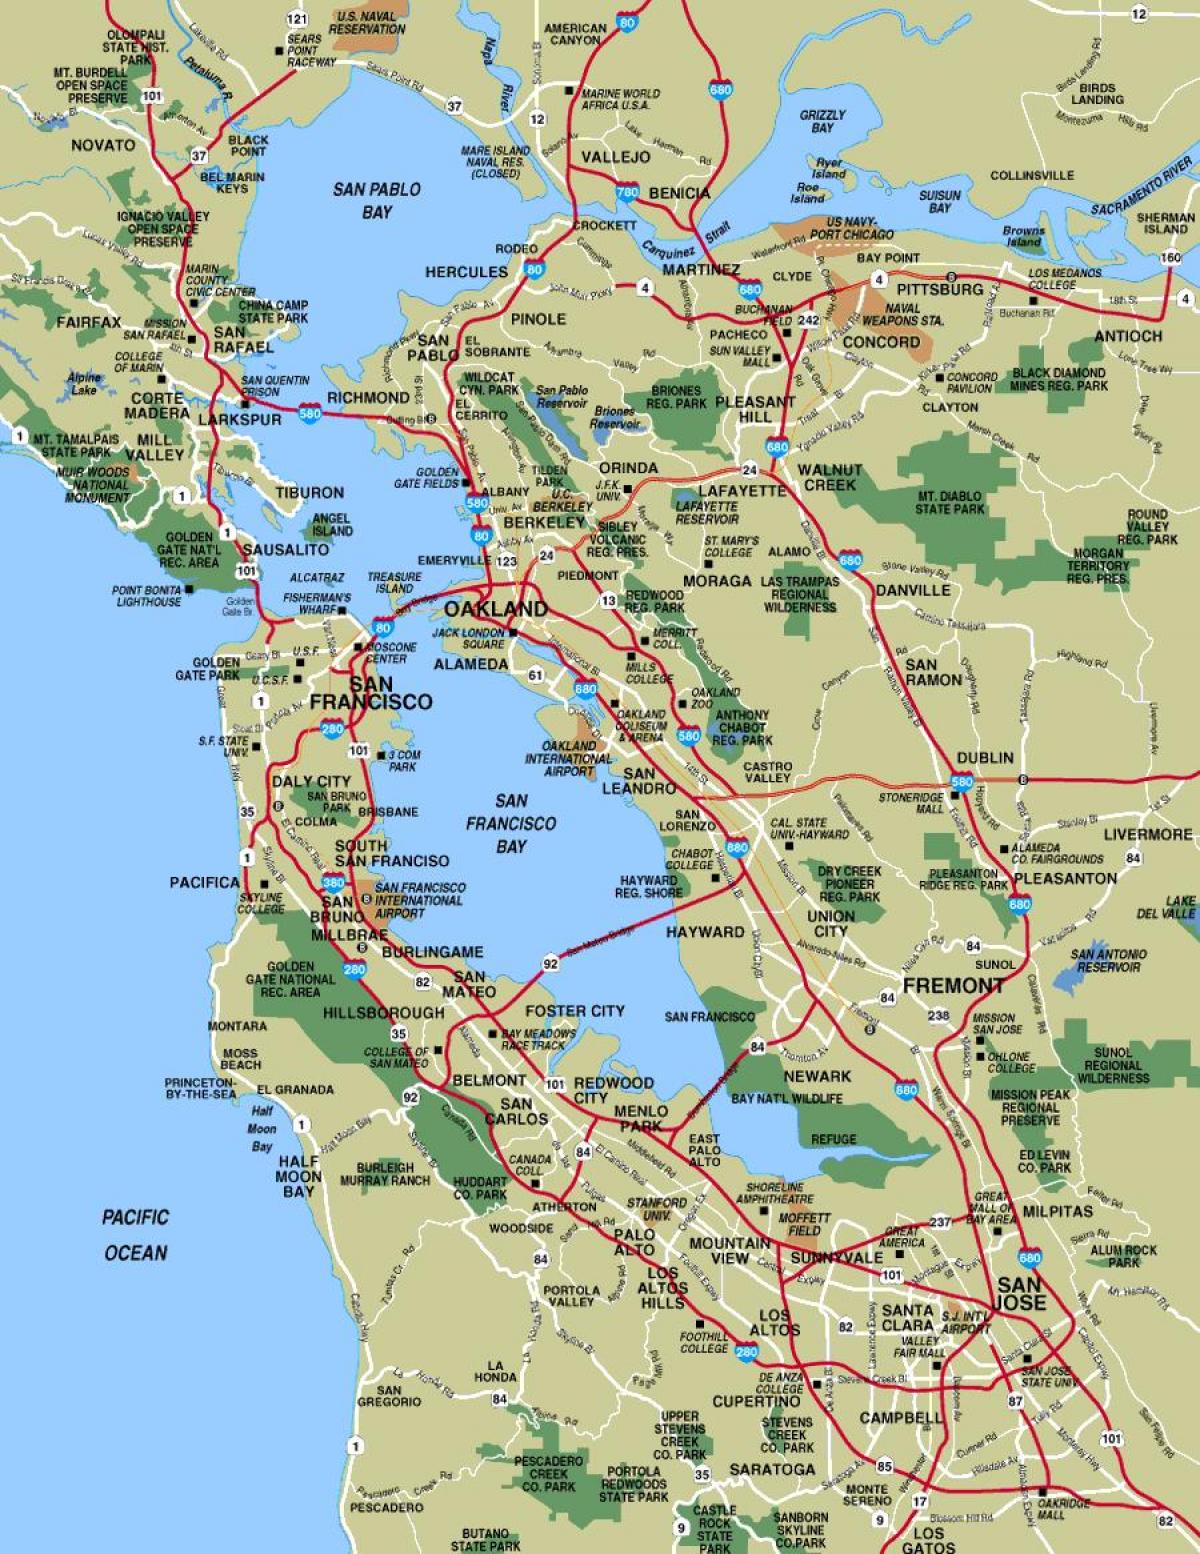 χάρτης των πόλεων γύρω από το Σαν Φρανσίσκο